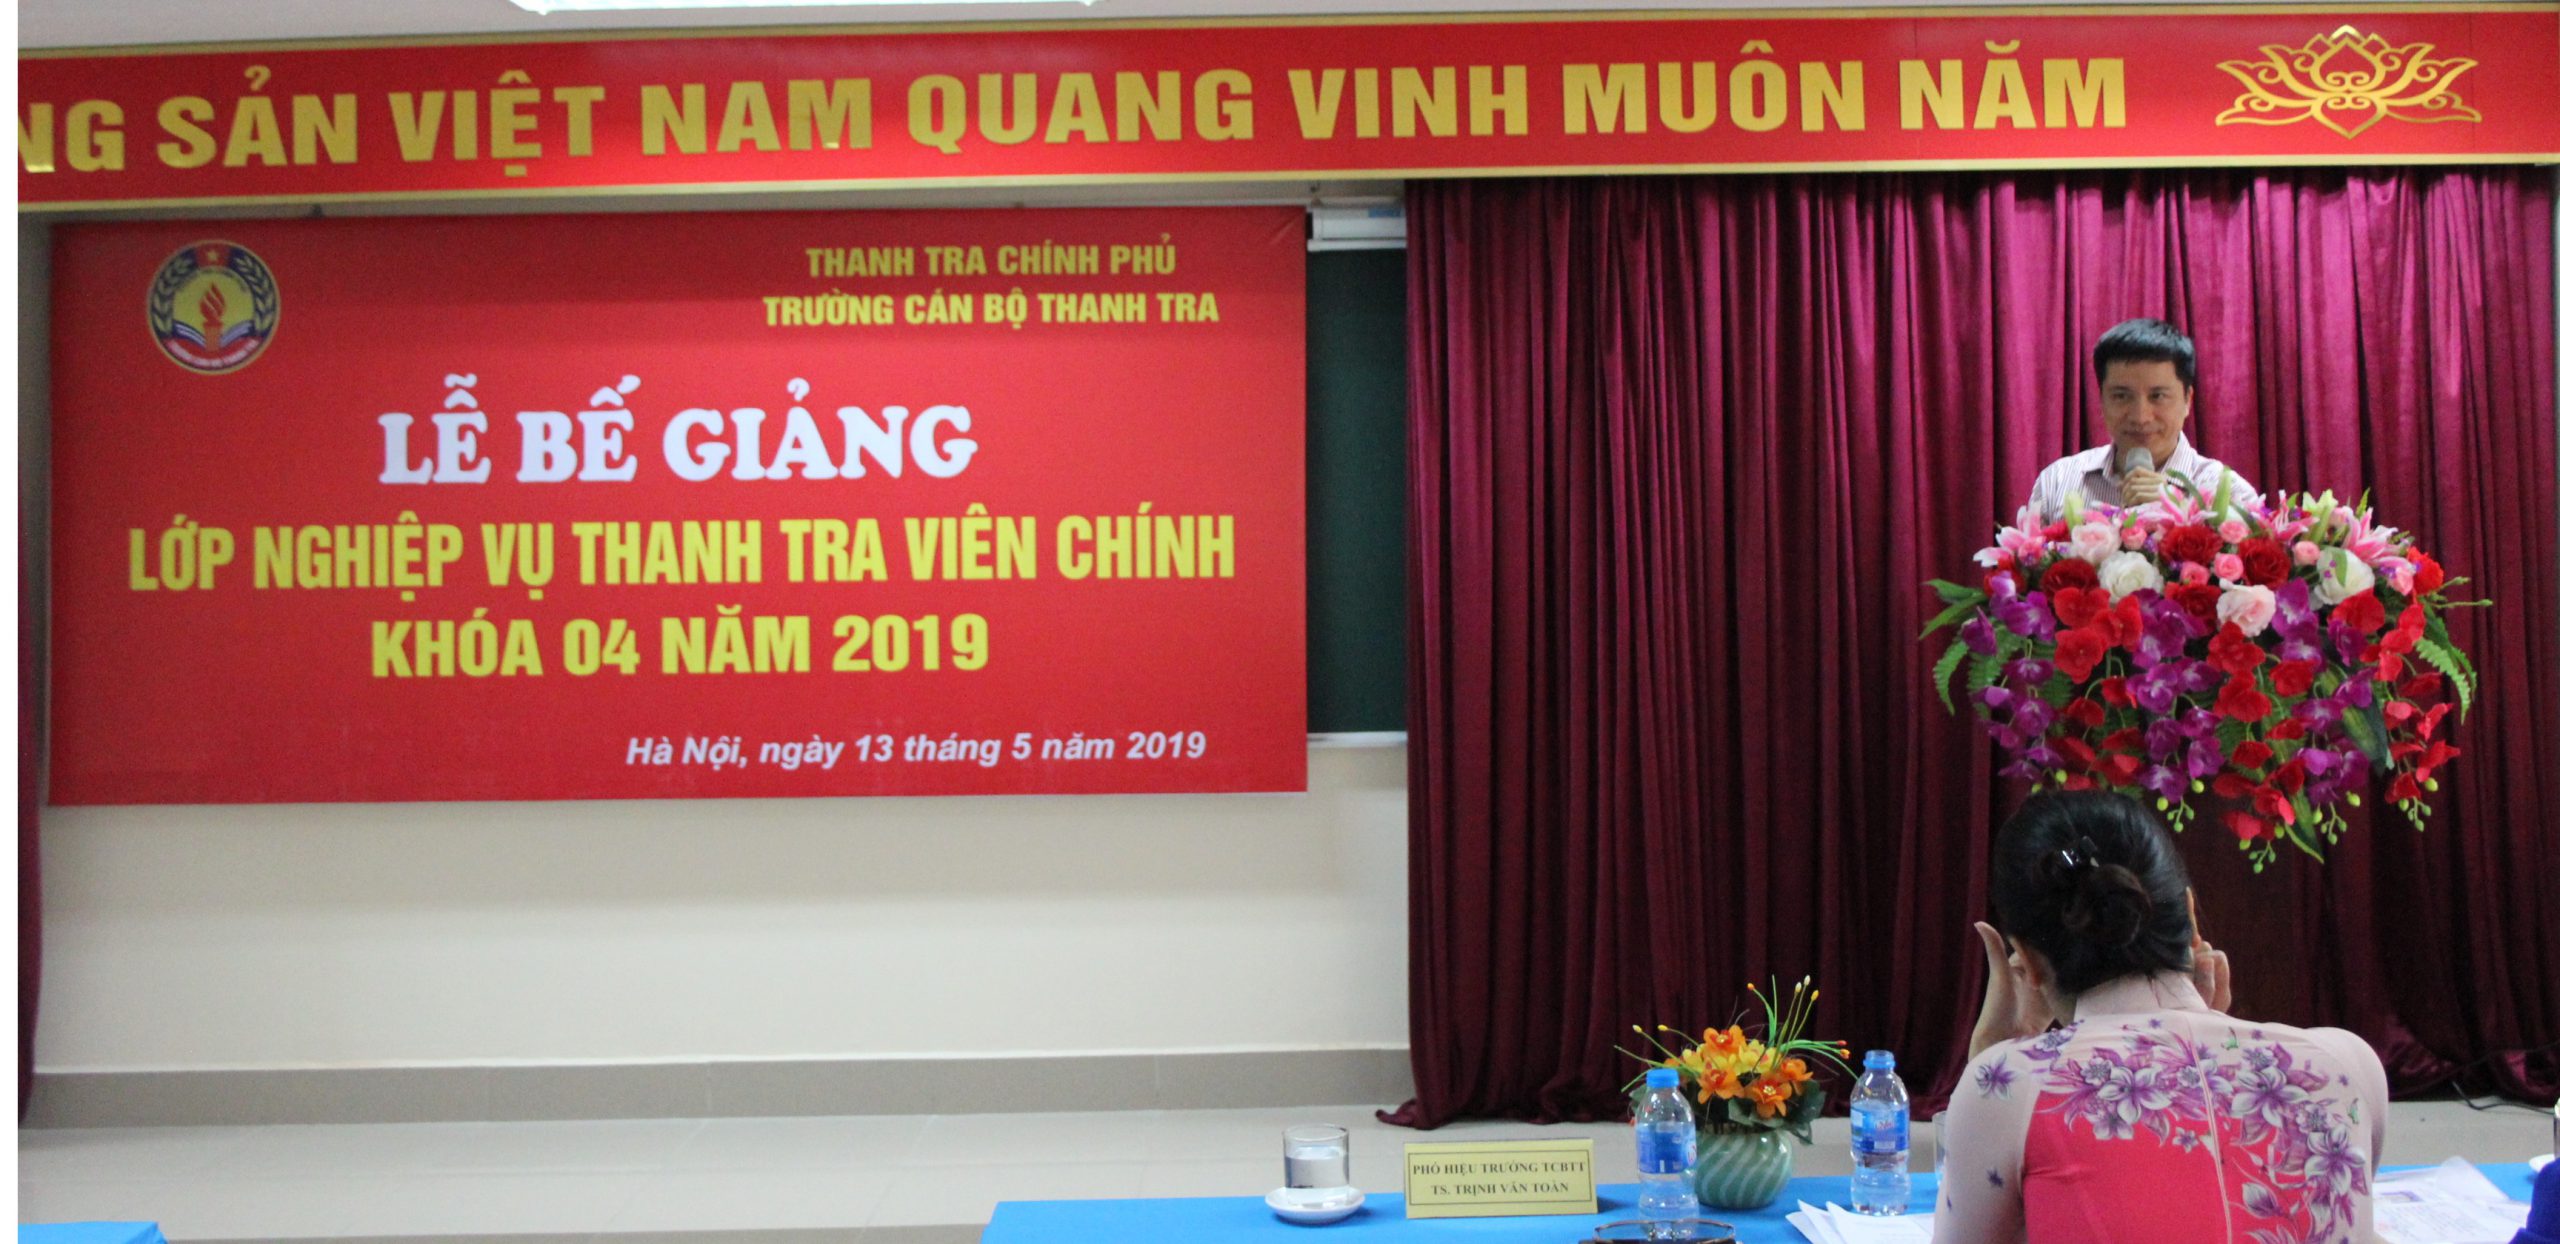 TS Trịnh Văn Toàn Phó Hiệu trưởng Trg CBTT phát biểu bế giảng khóa học